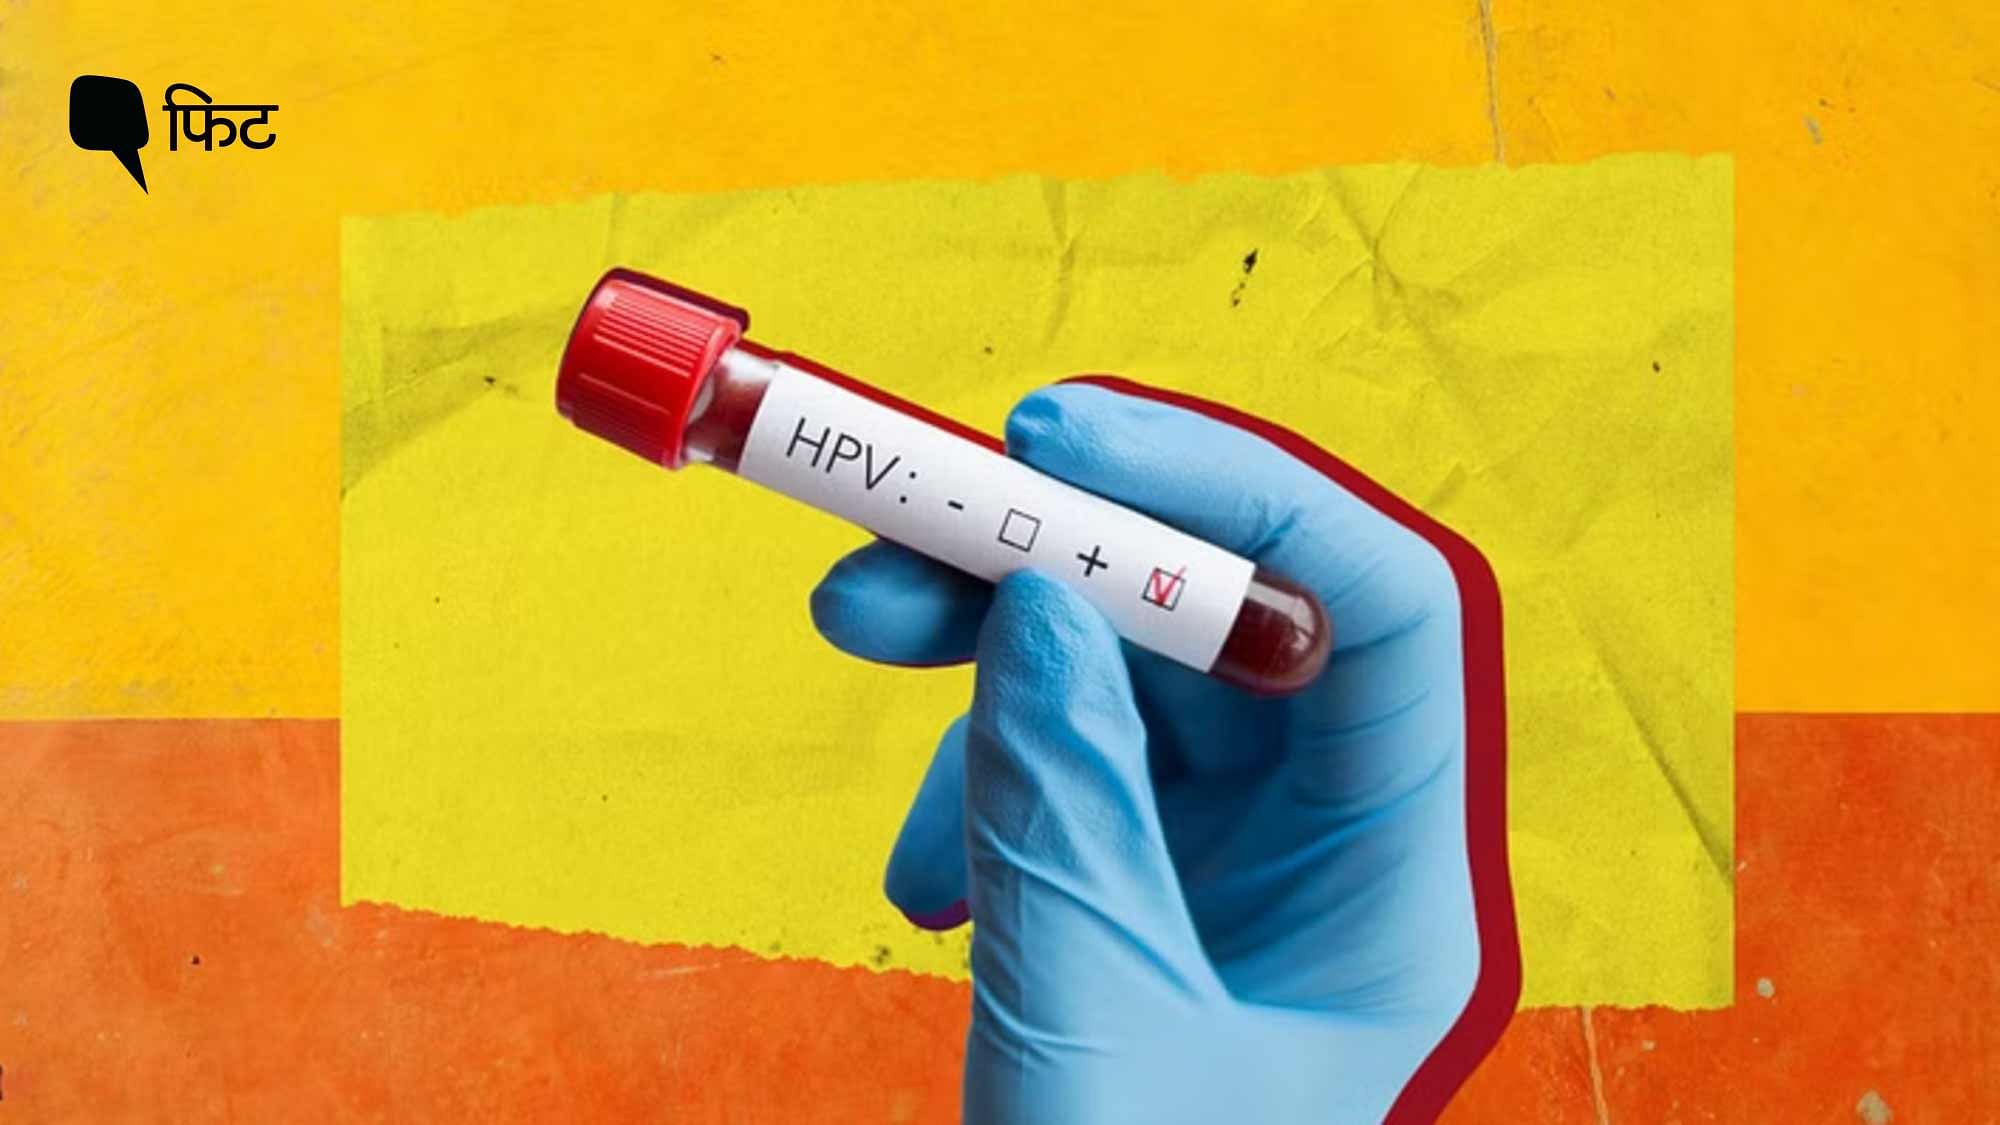 <div class="paragraphs"><p>HPV vaccine: क्या&nbsp;एचपीवी वैक्सीन सर्वाइकल कैंसर को रोक सकता है?</p></div>